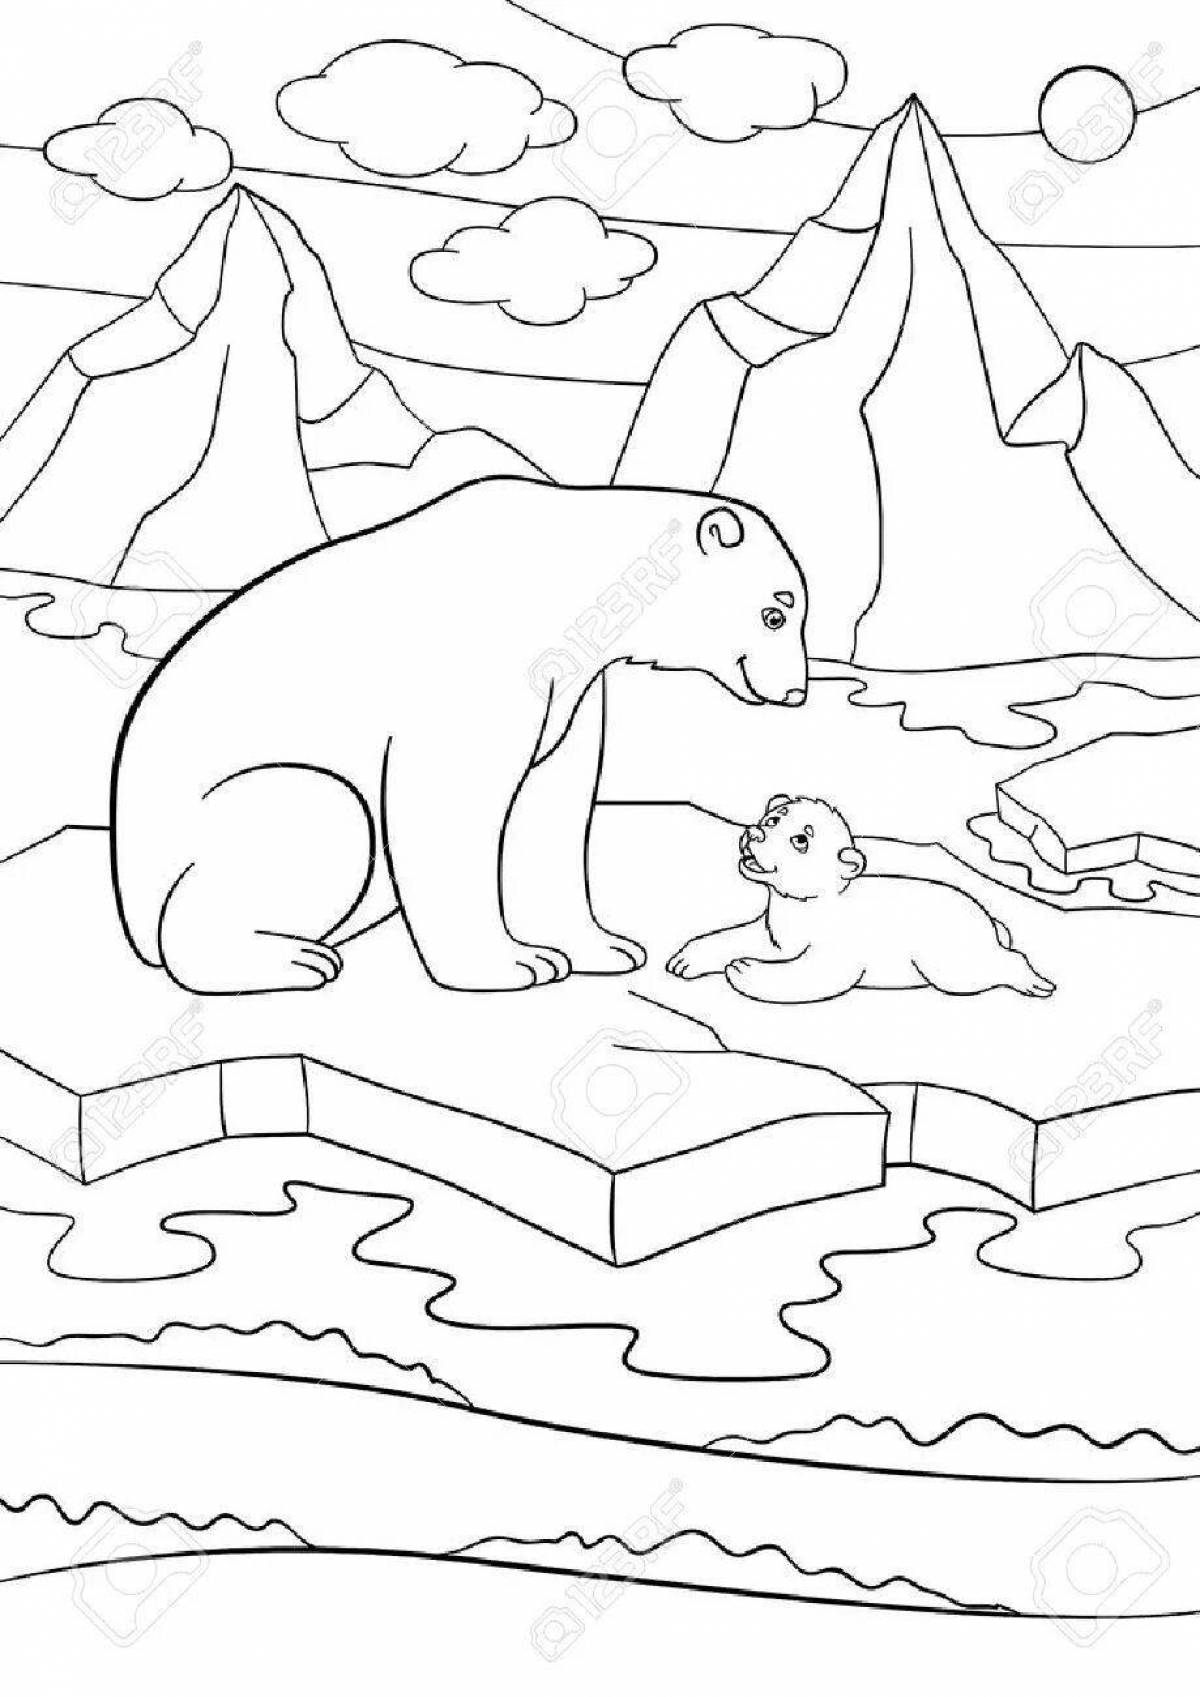 Shining polar bear coloring book